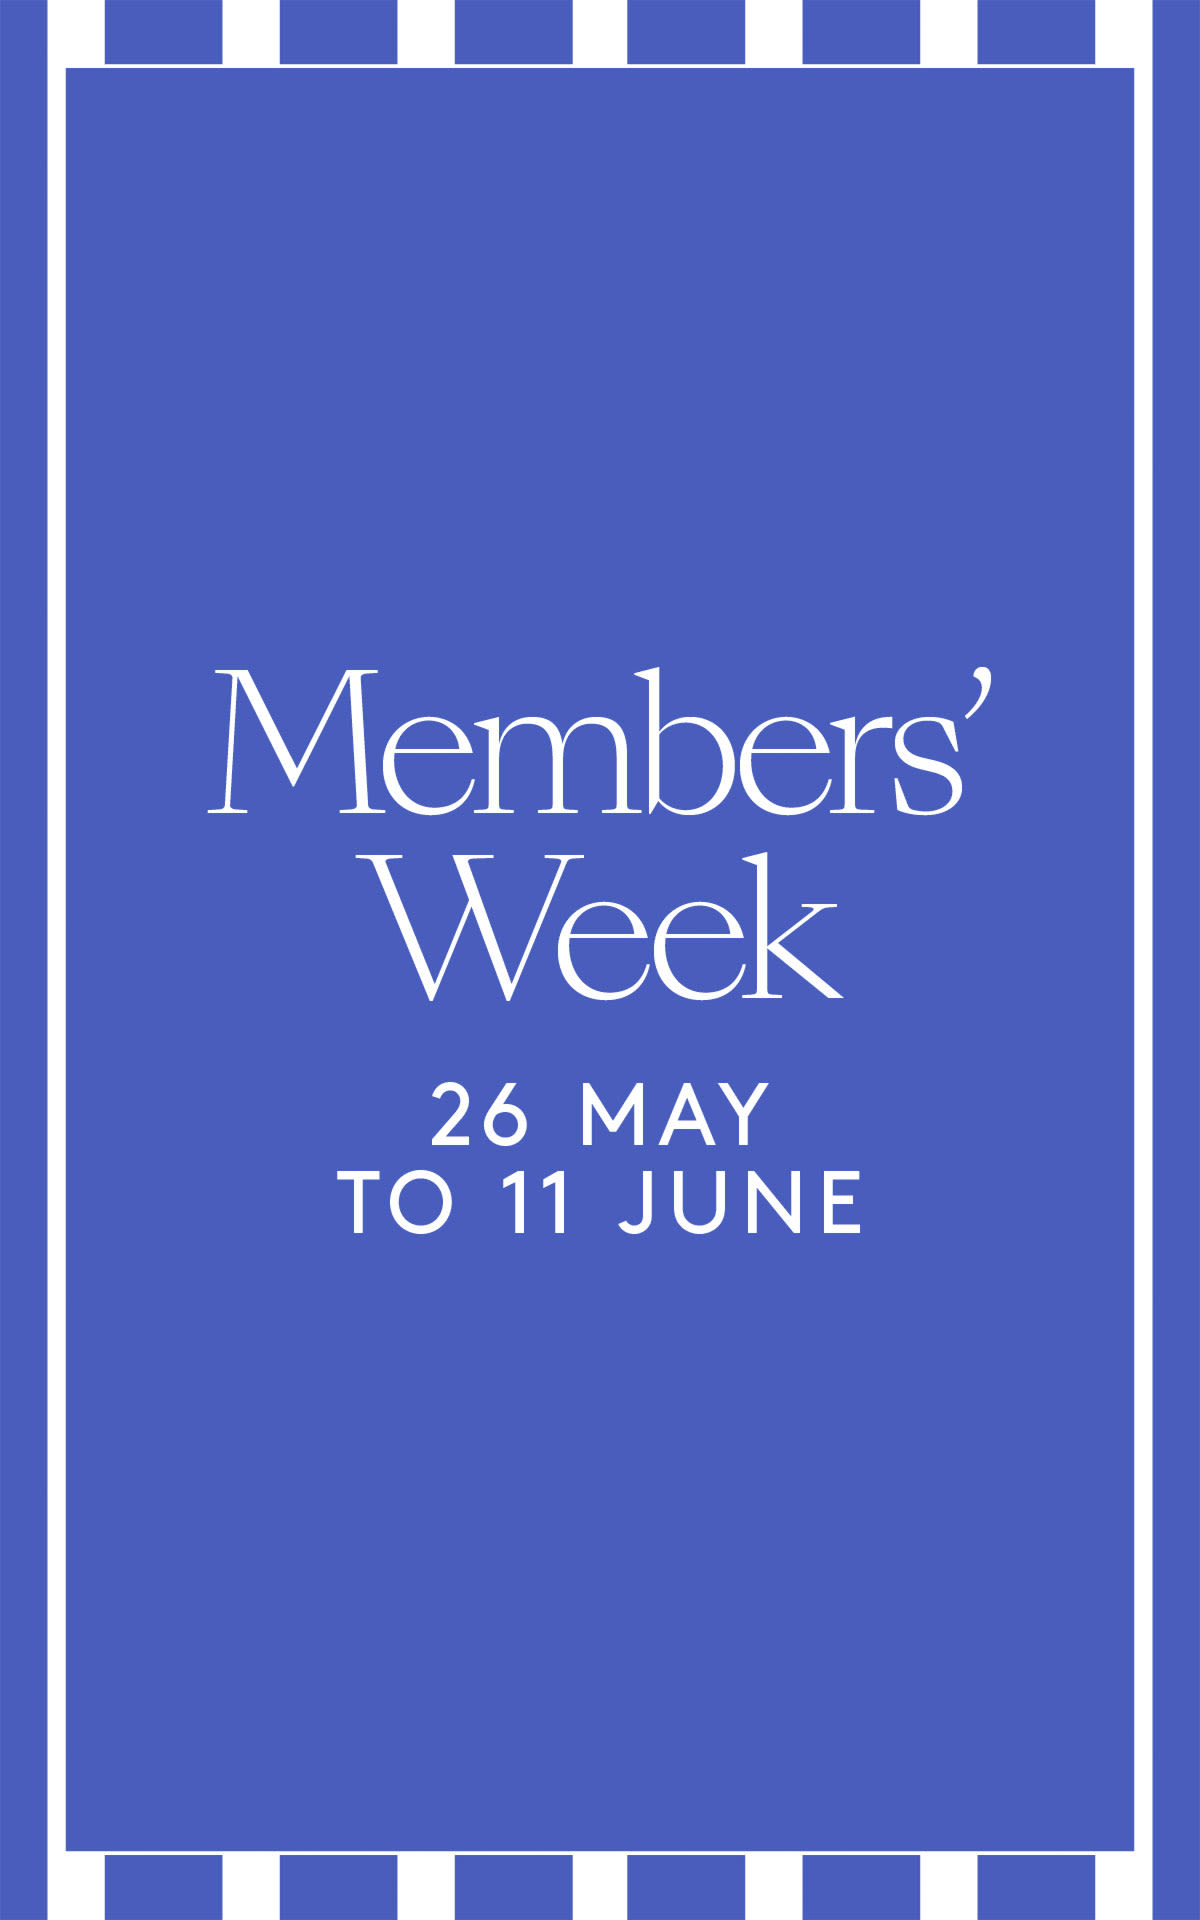 Members’ Week is here